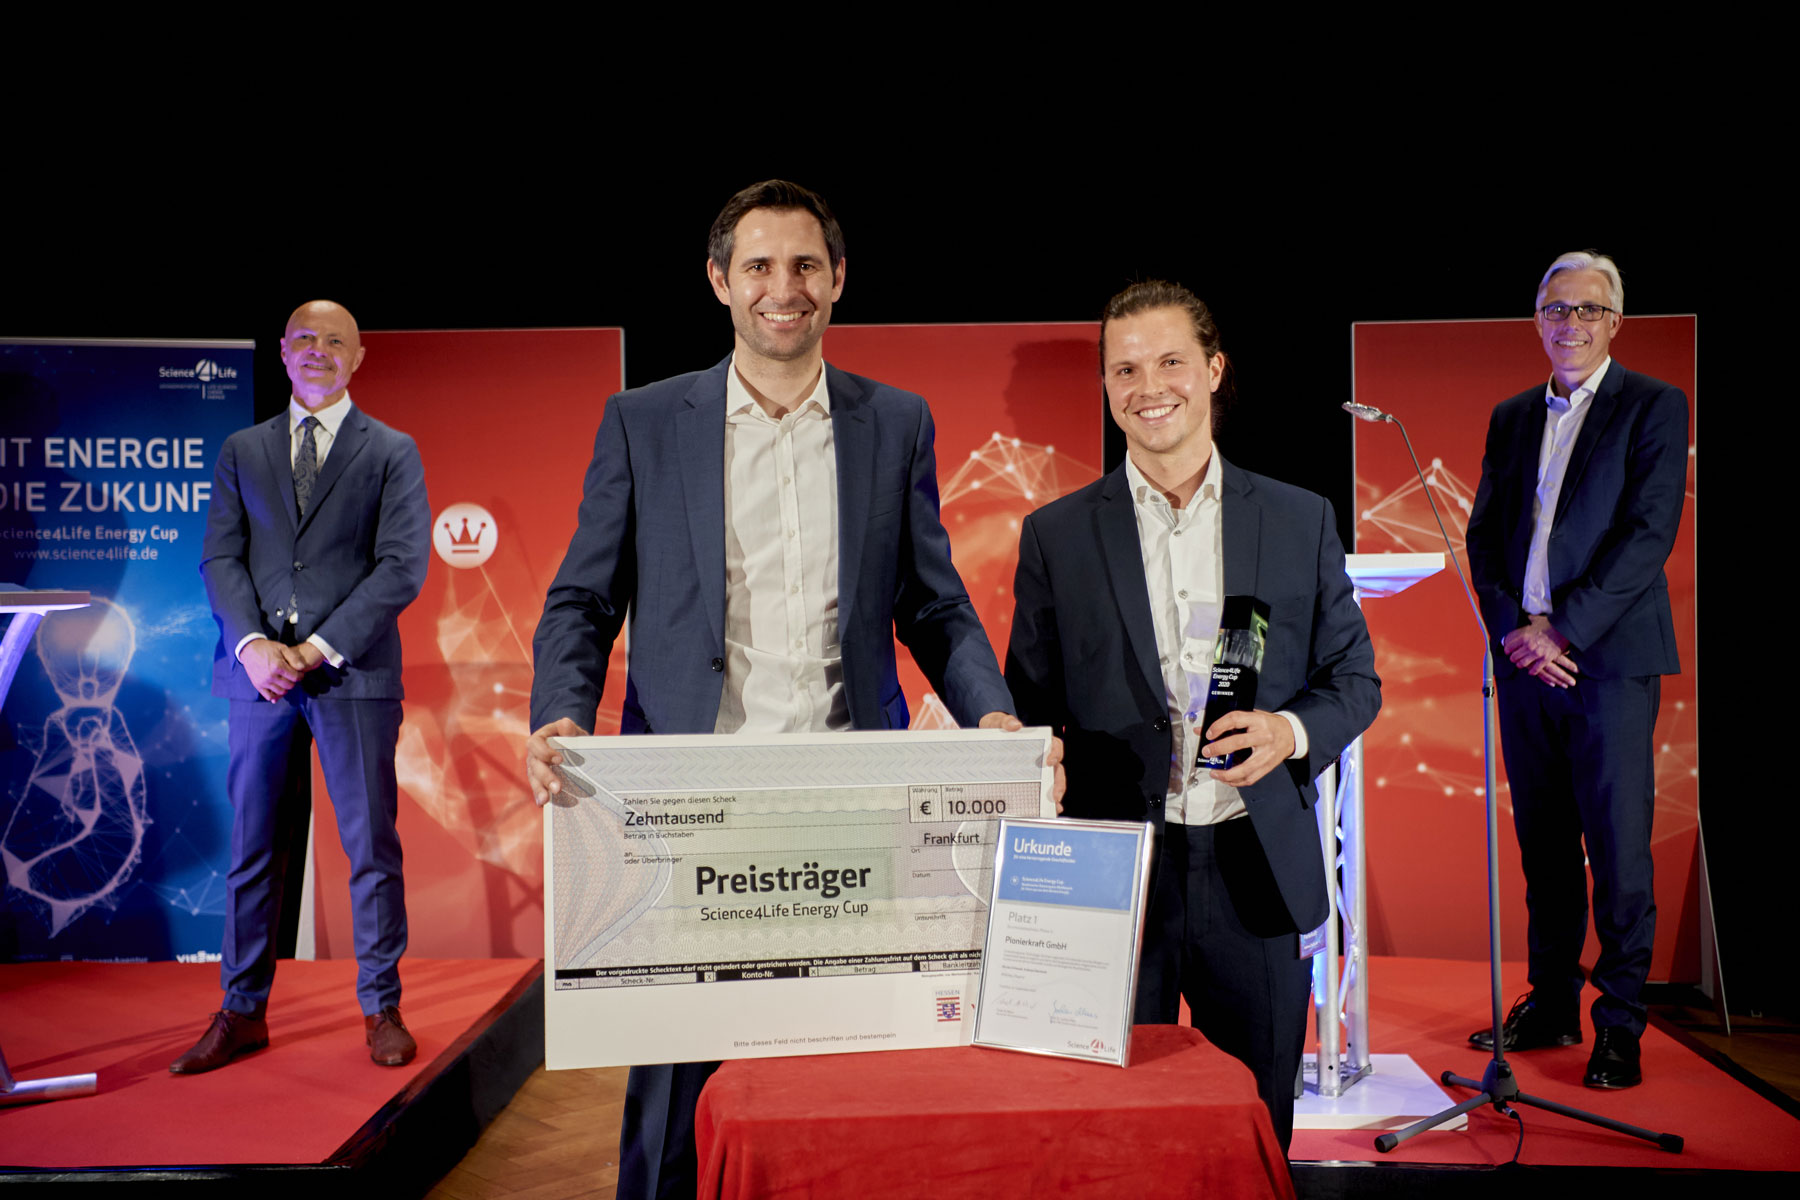 Science4Life Energy Cup, Gewinner Businessplan Wettbewerb Pionierkraft